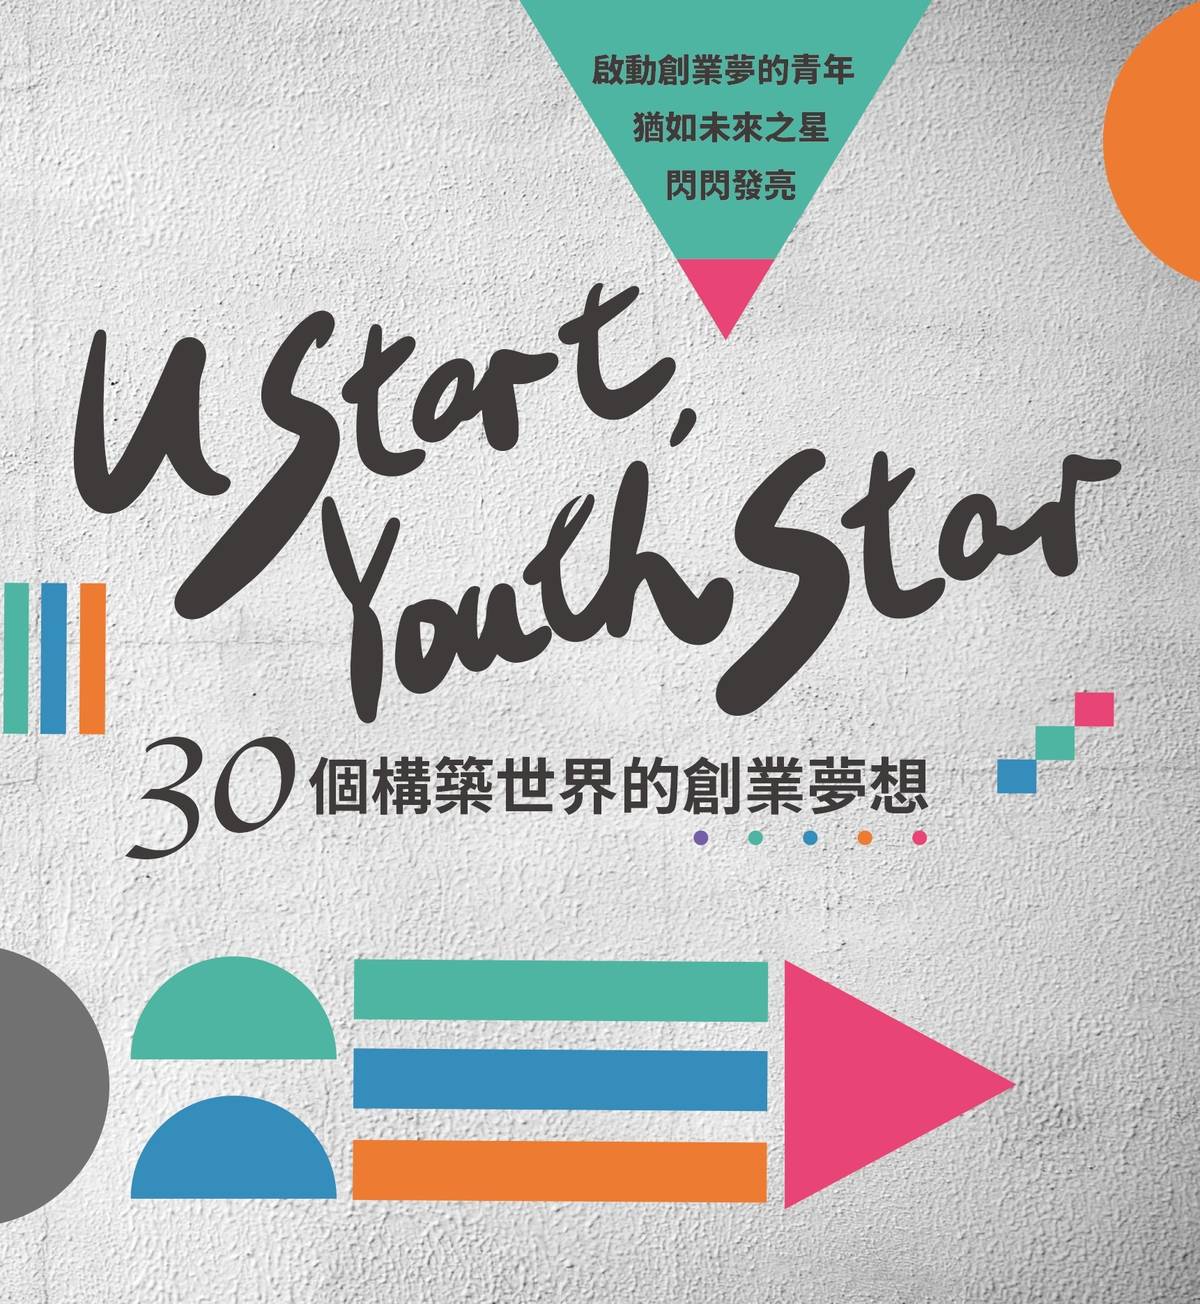 教育部青年發展署出版《U-start,_Youth_Star─30個構築世界的創業夢想》，鼓勵青年投入創新創業